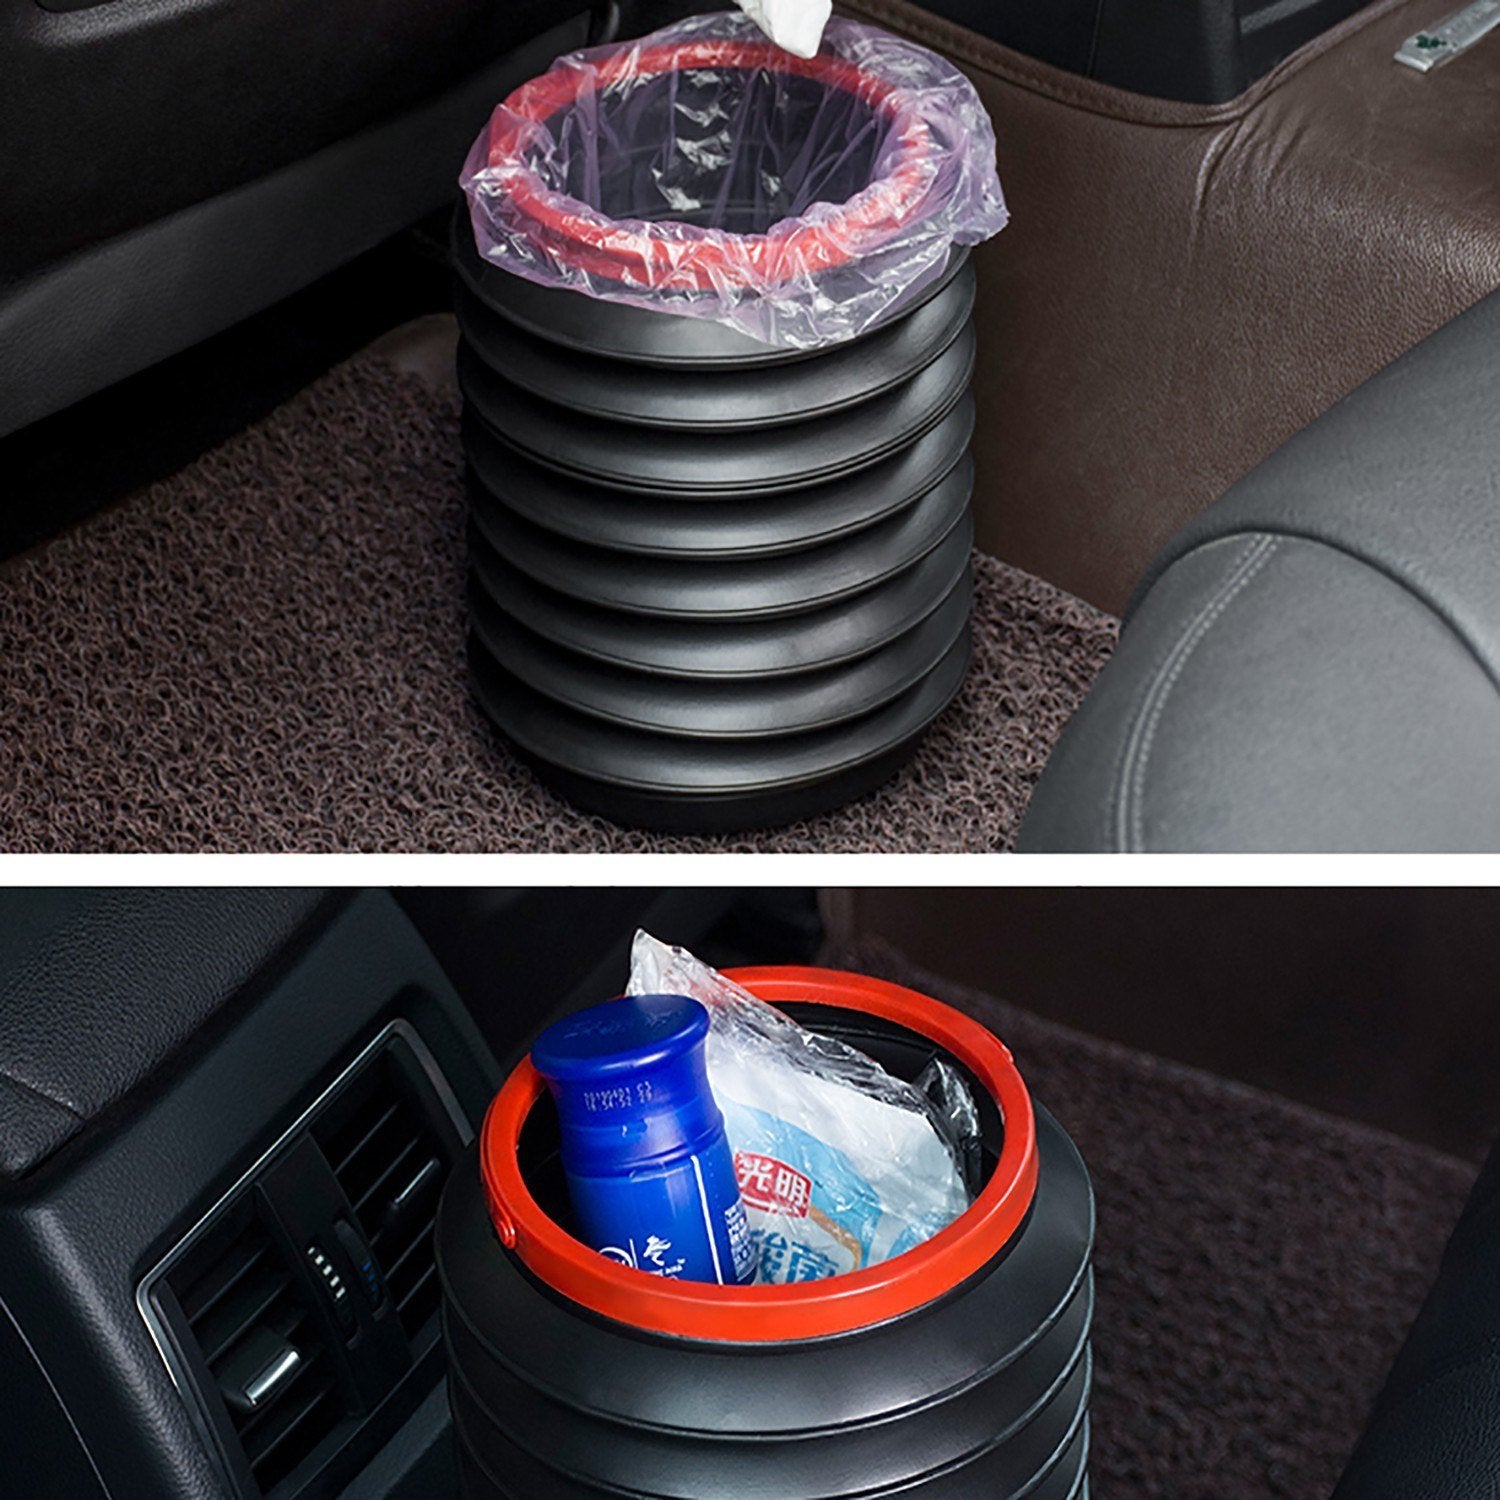 Folding trash can/outdoor portable retractable bucket/in-car storage bucket color box packaging